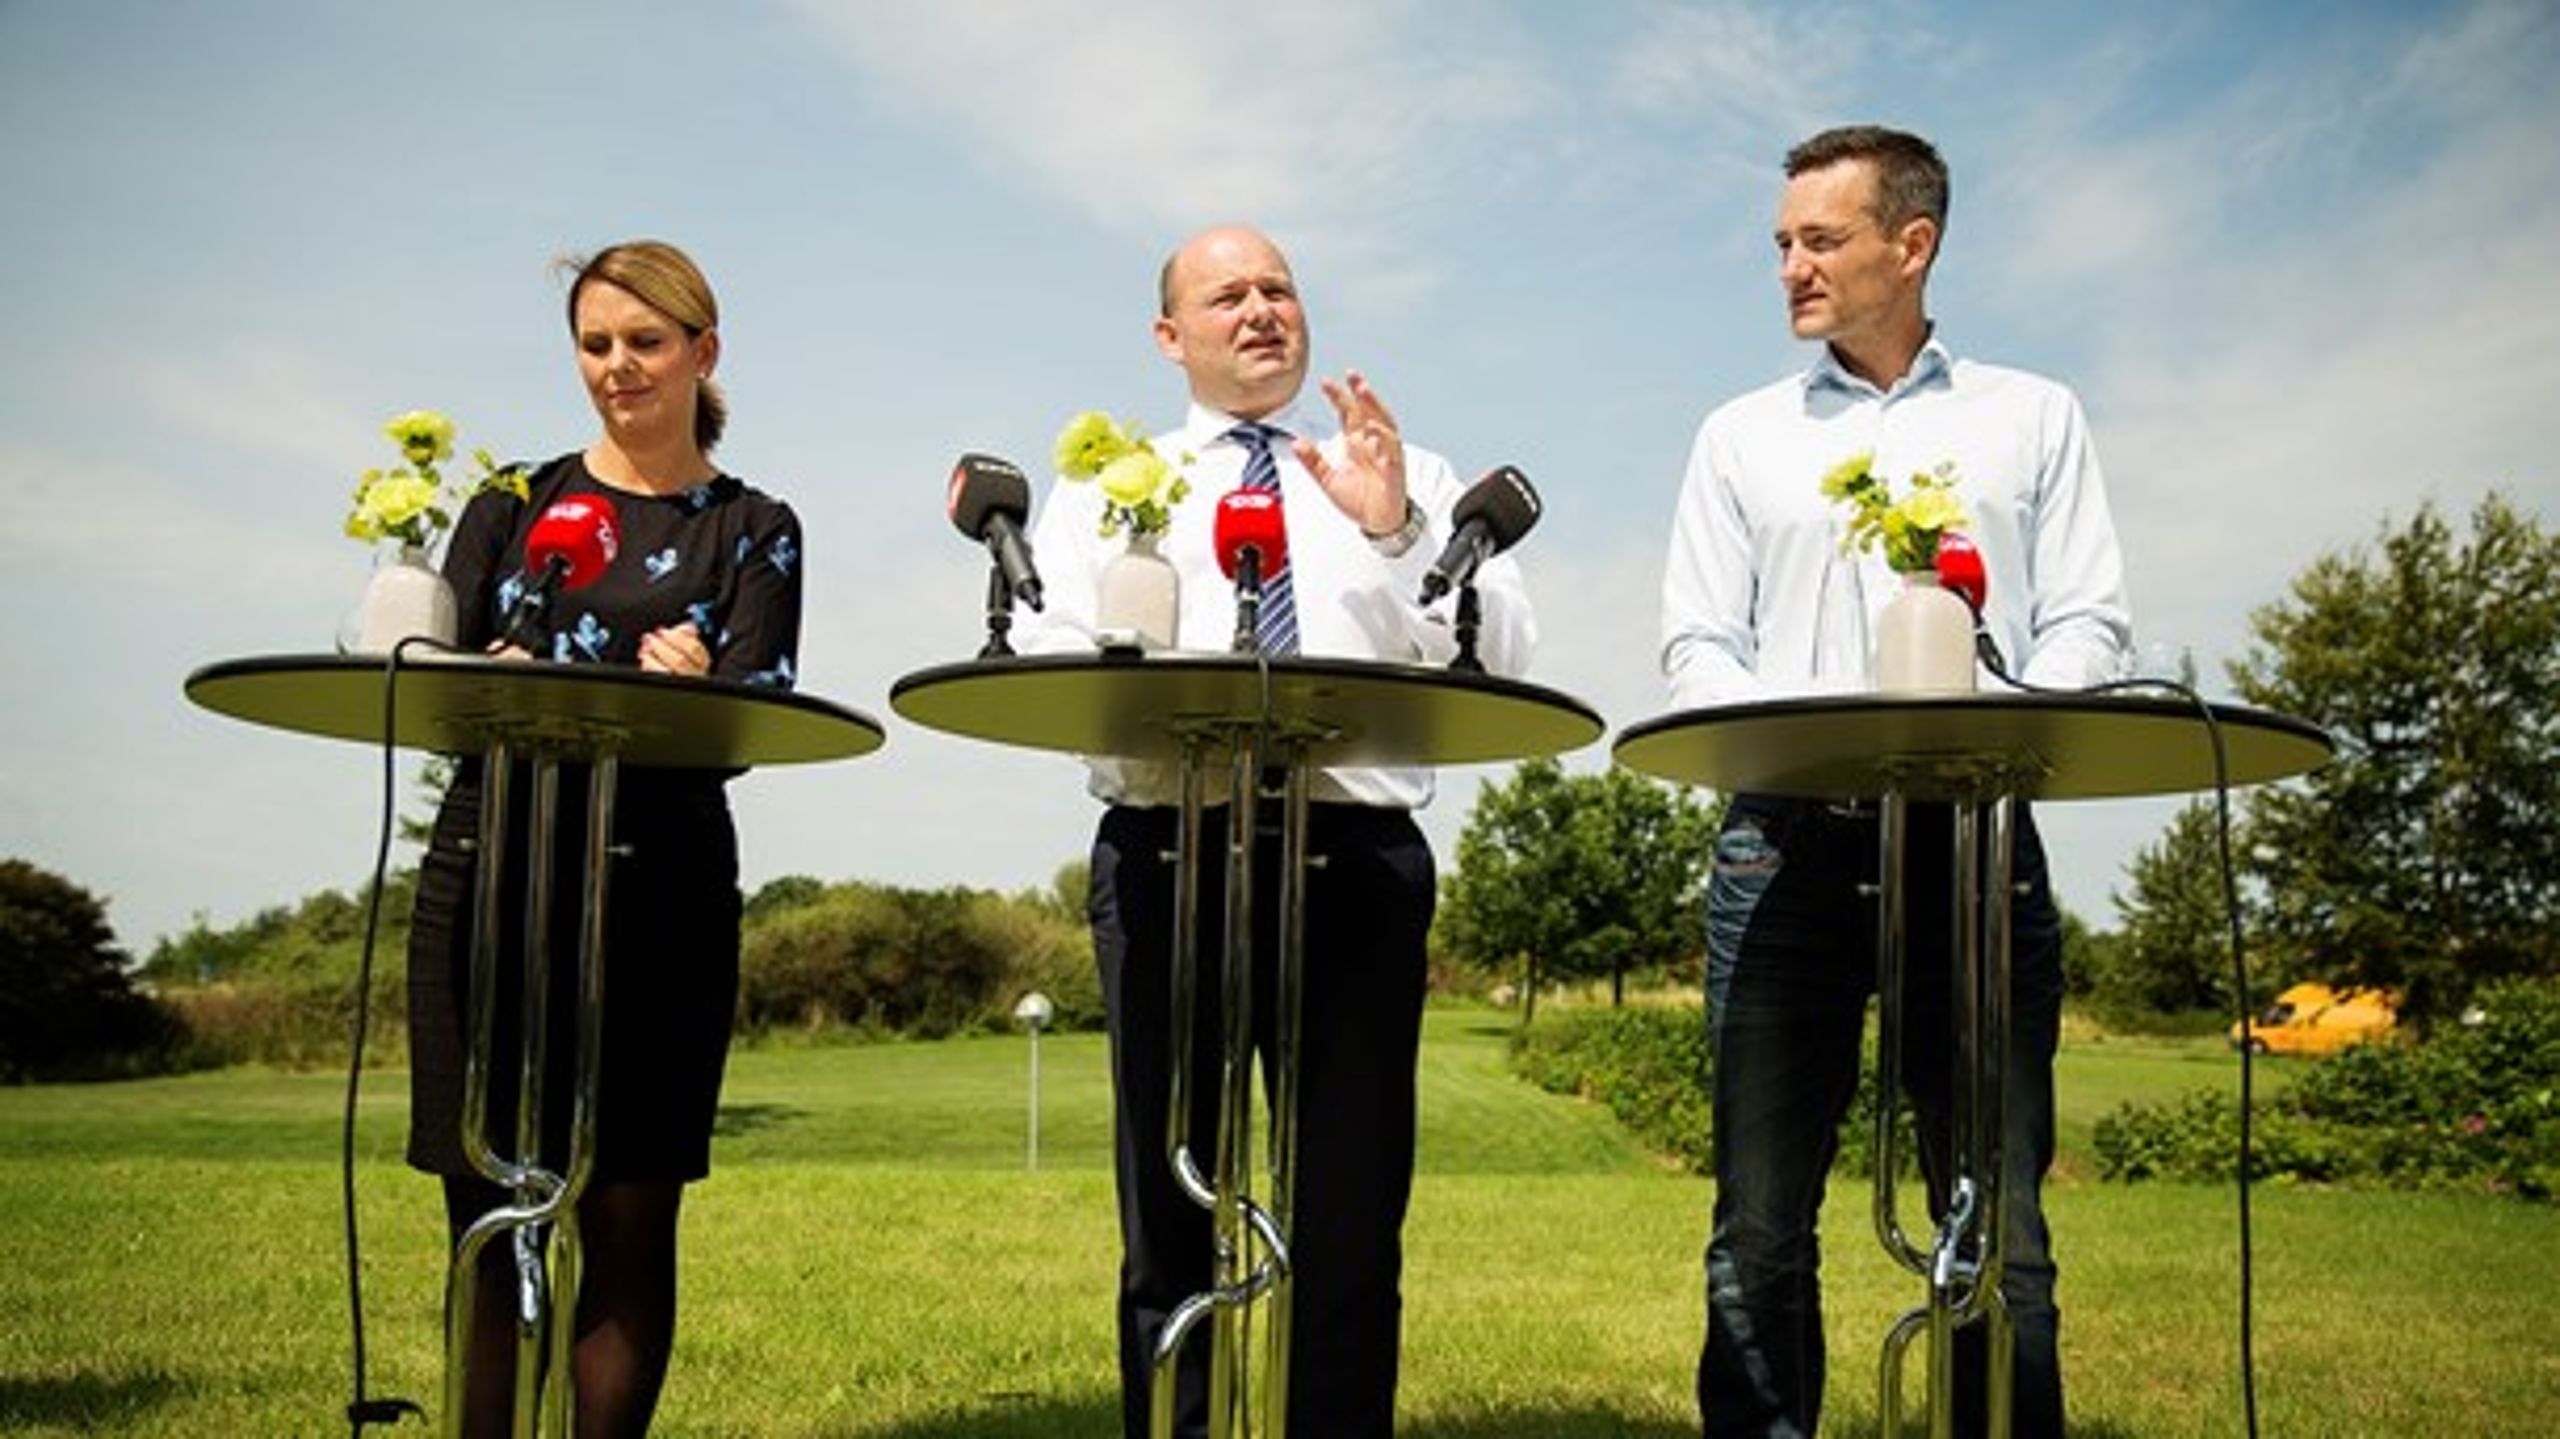 Kun otte procent af danskerne ser en mere grøn politik, efter Konservative er blevet en del af regeringen.